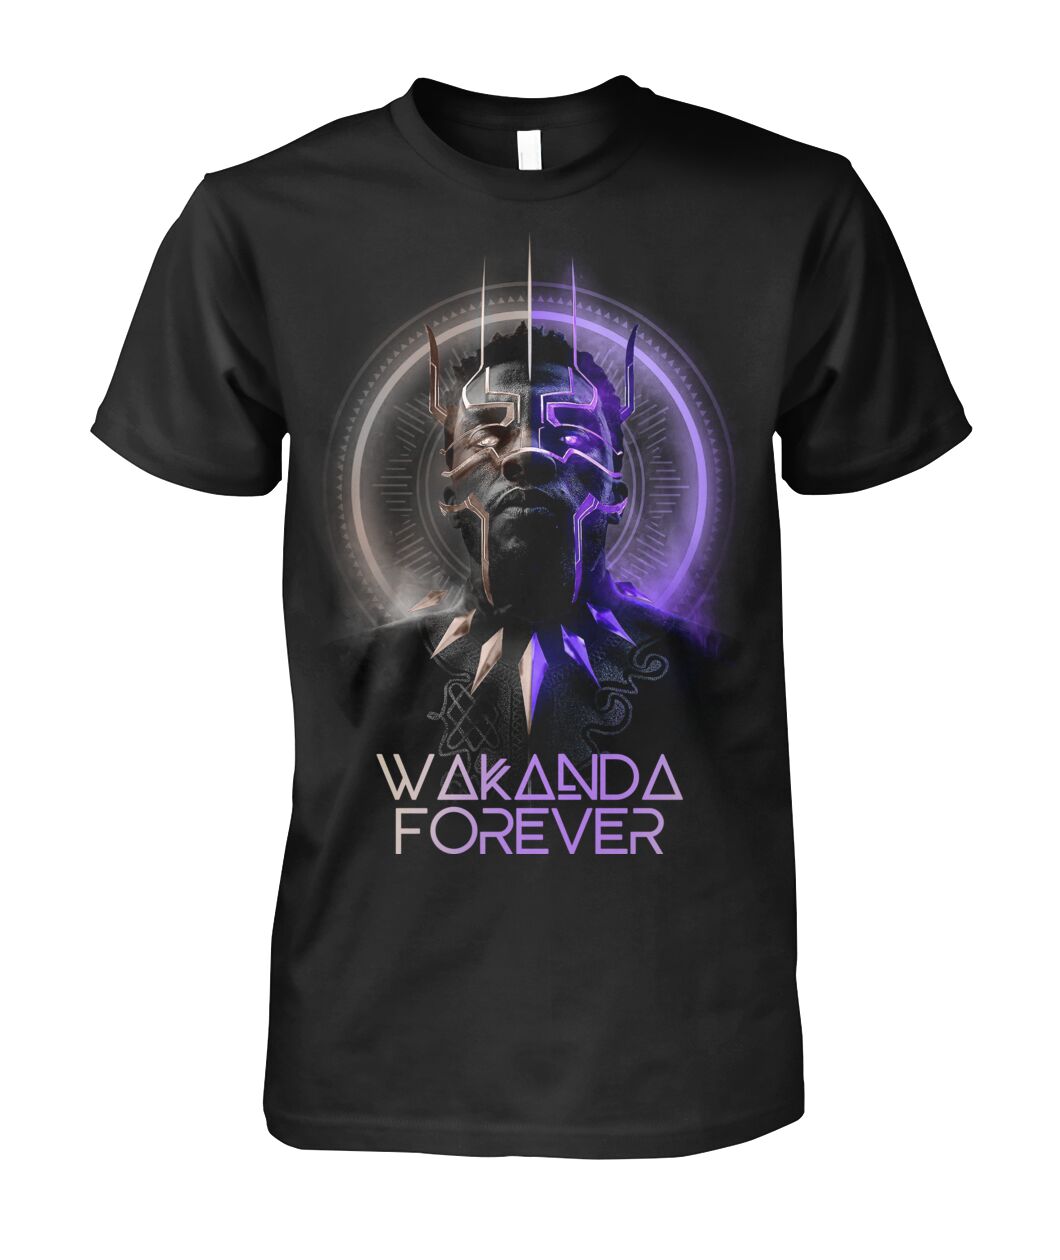 Black Panther Chadwick Boseman Wakanda Forever T-shirt